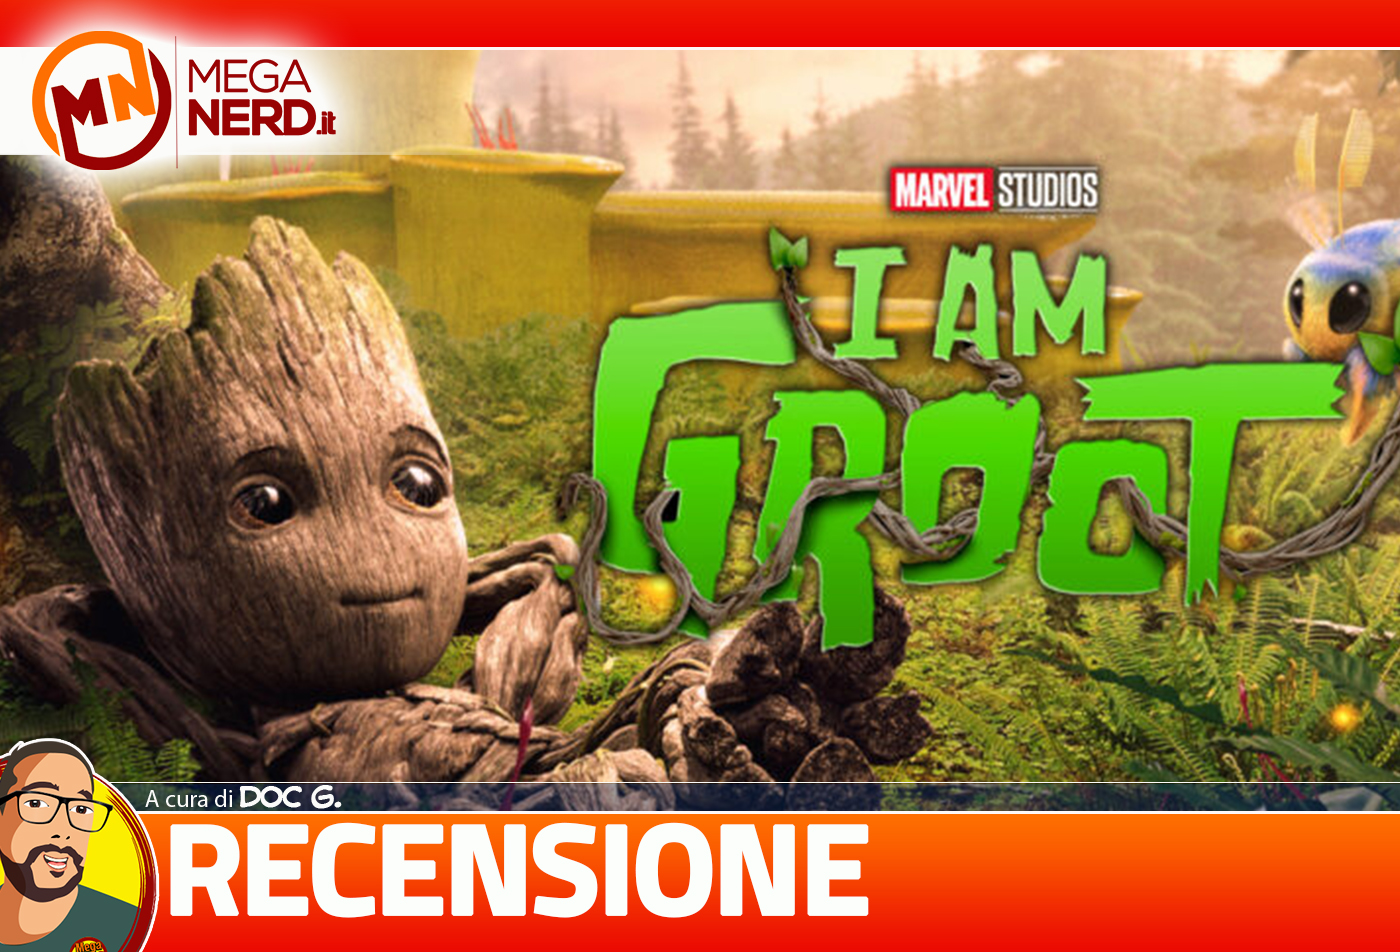 I Am Groot - Recensione della serie Disney+ con Baby Groot!